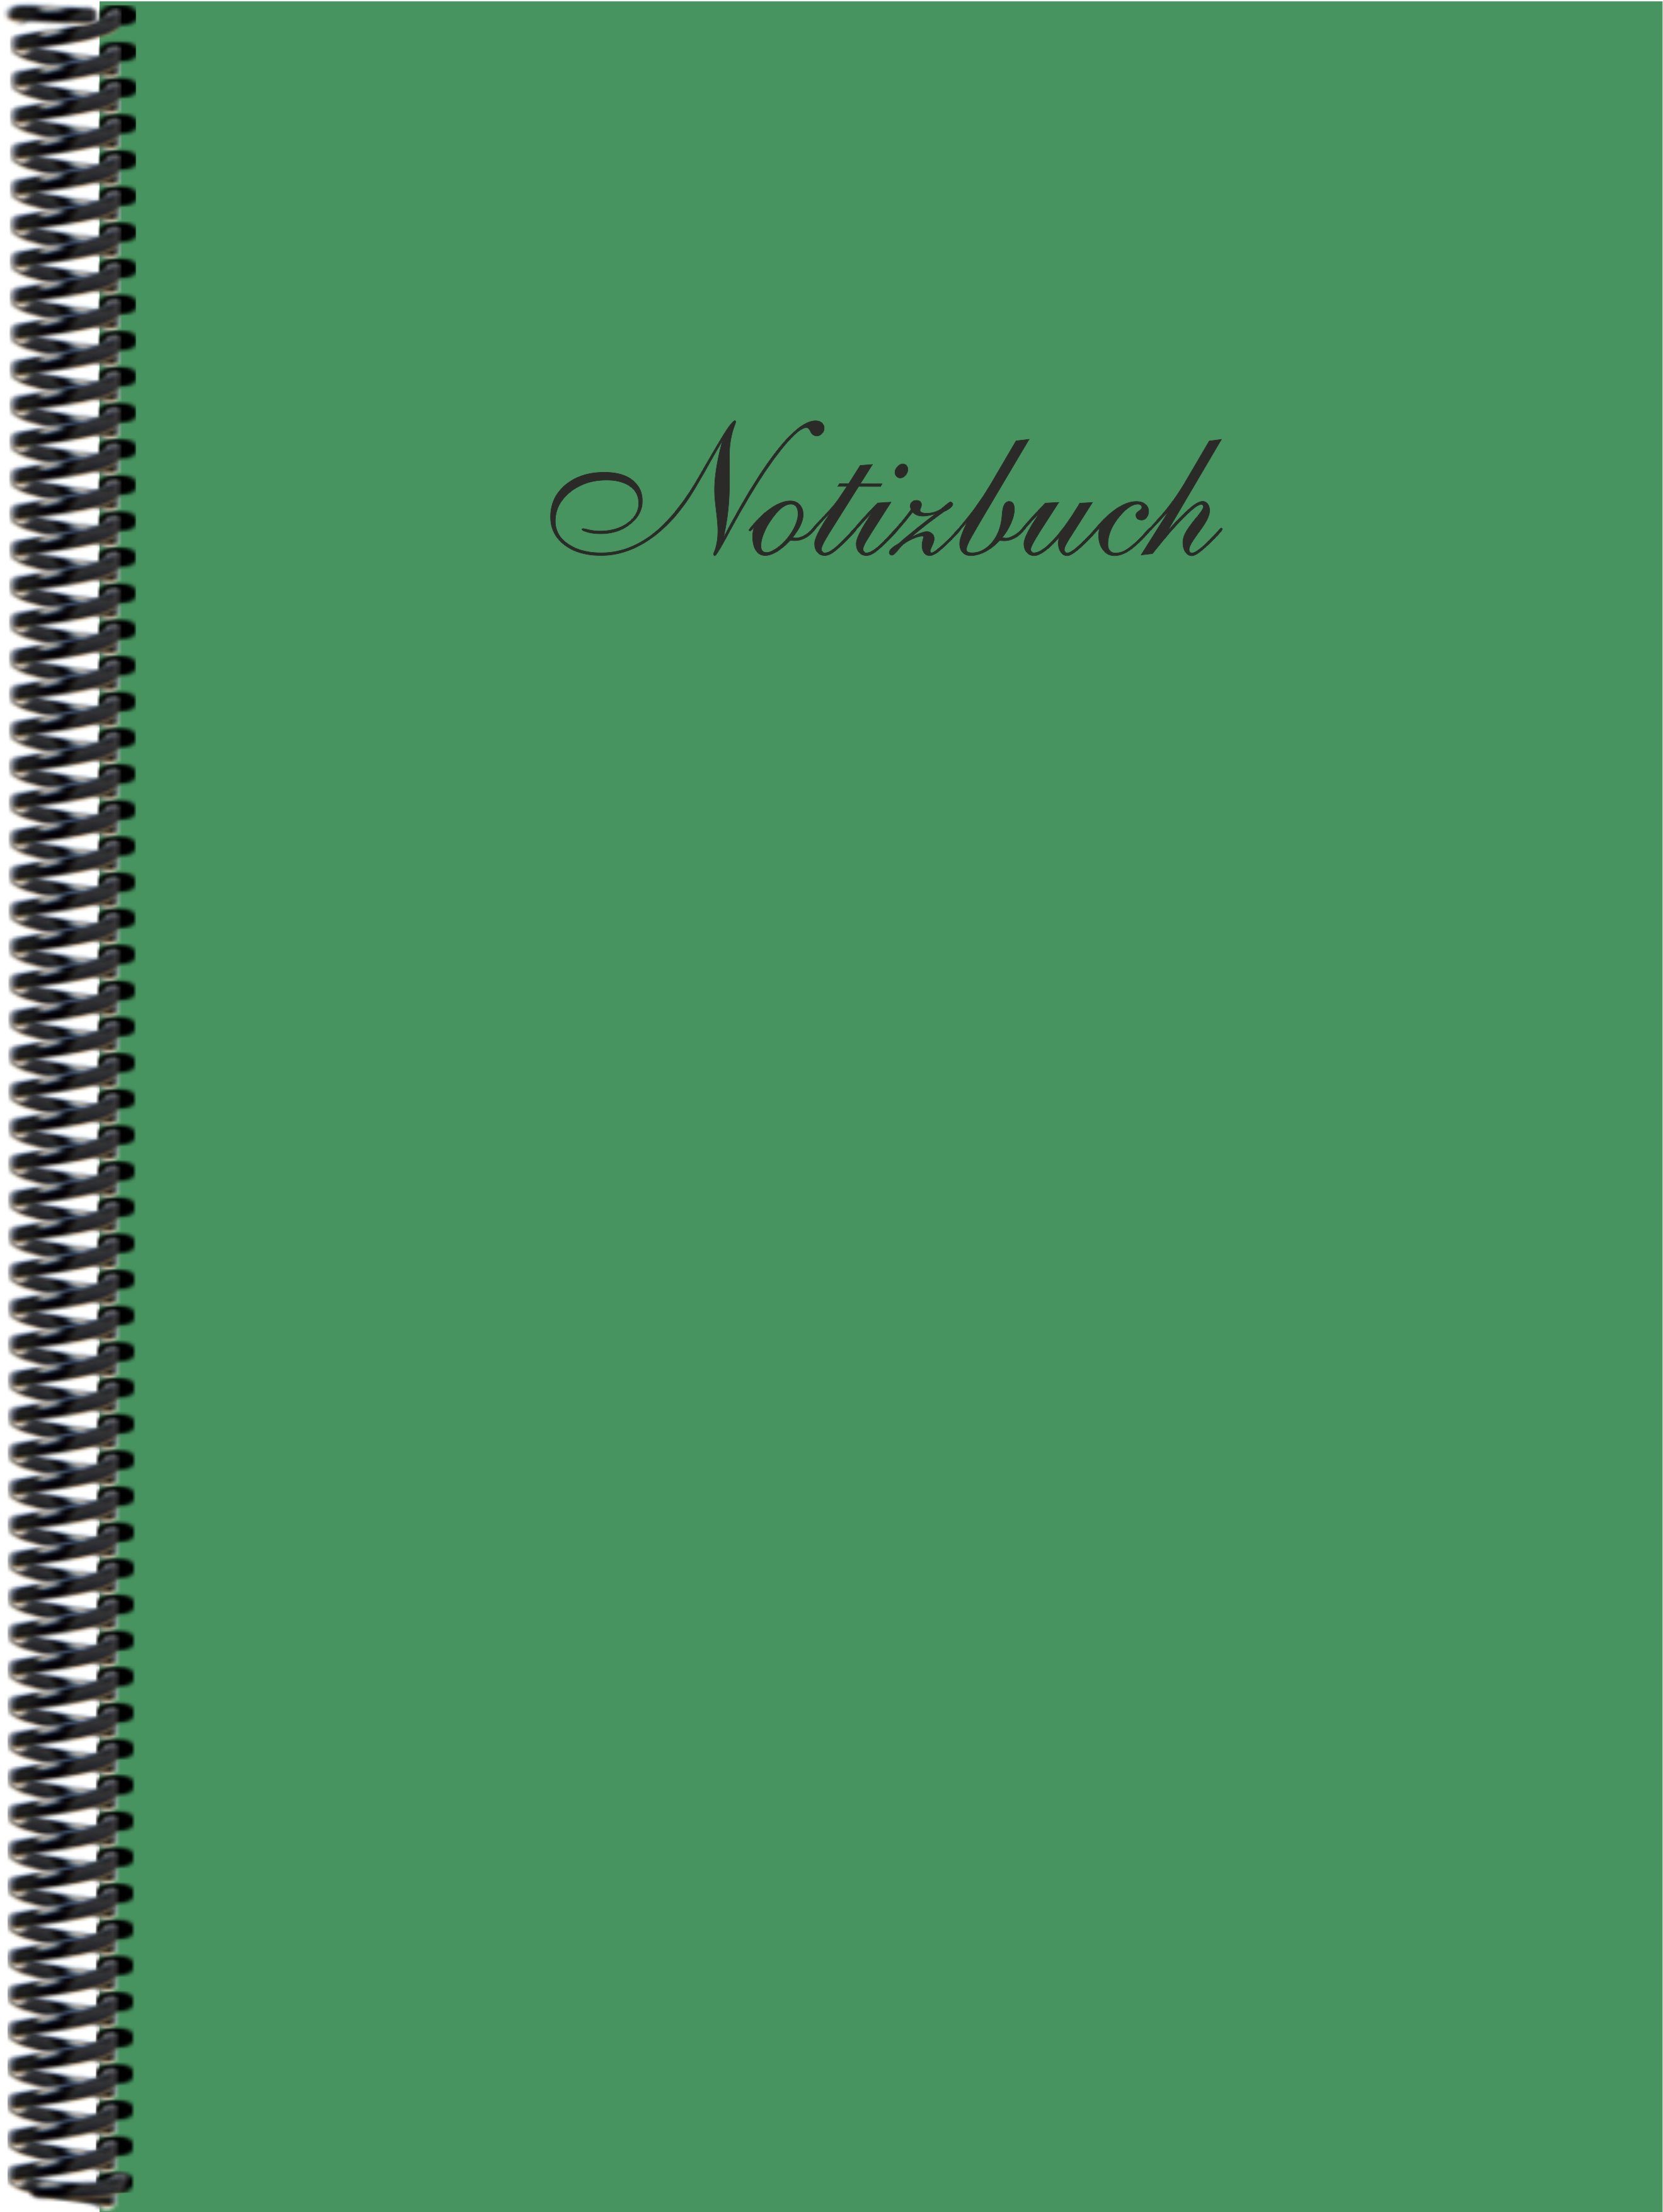 in liniert, der Notizbuch Notizbuch Trendfarbe E&Z moosgrün Gmbh DINA4 Verlag